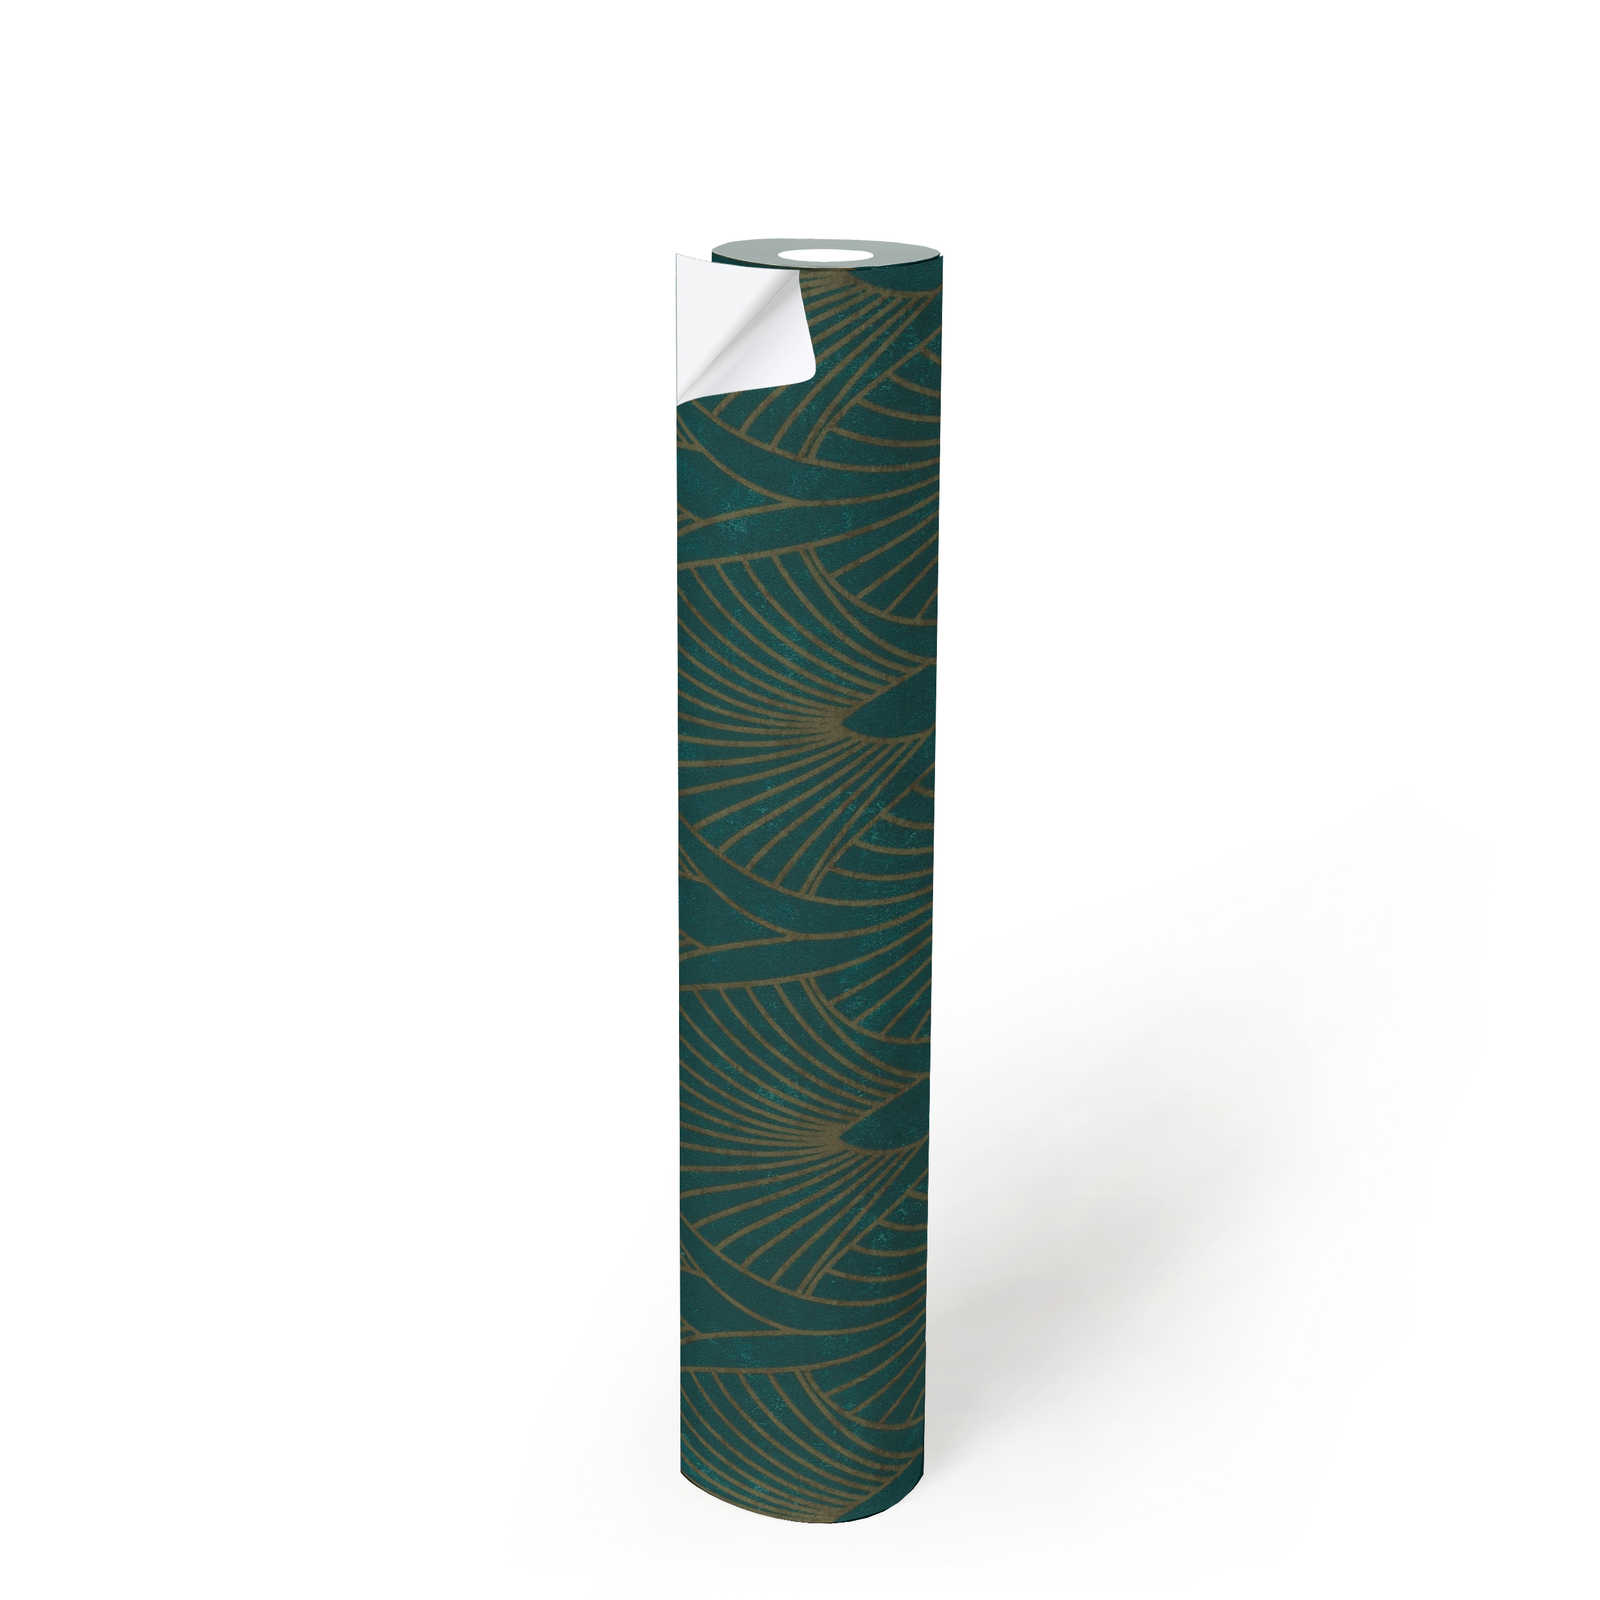             Selbstklebende Tapete | Art-Déco Design mit Metallic Effekt – Grün, Metallic
        